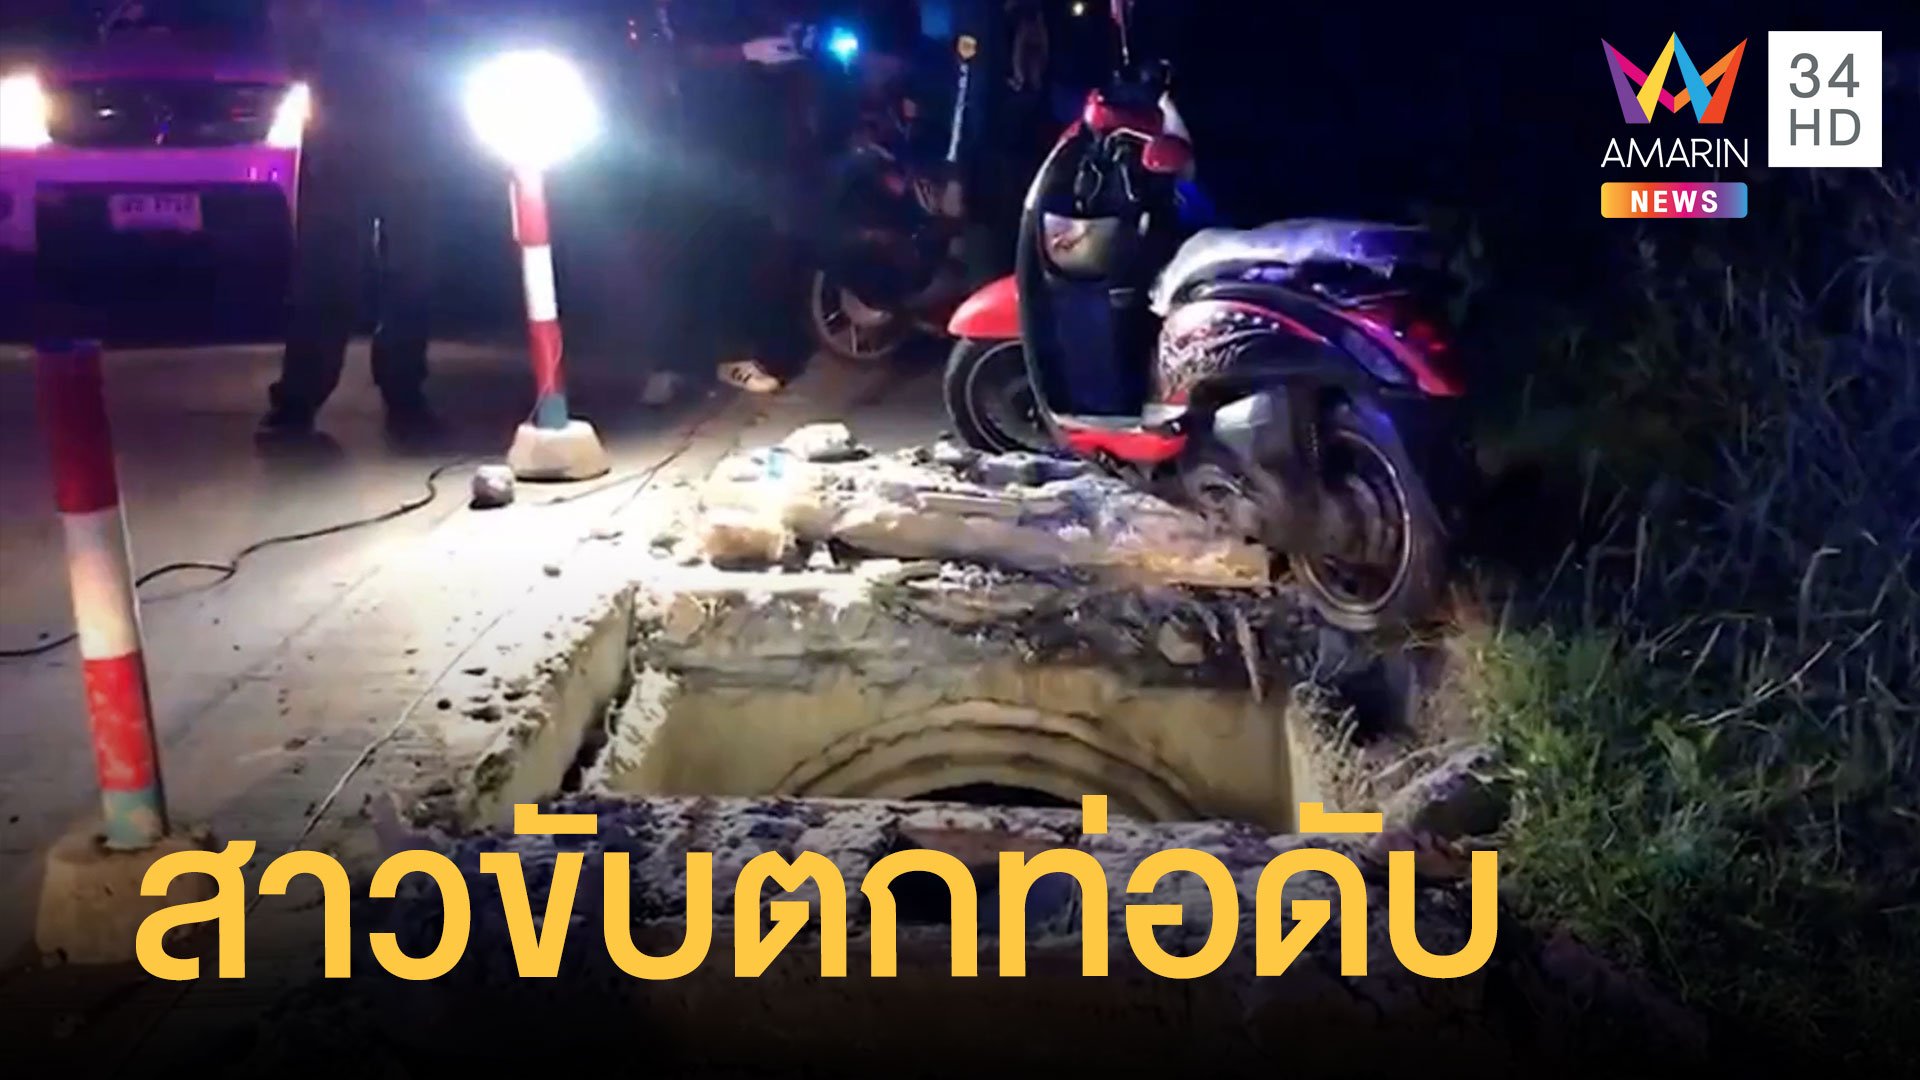 สลด สาวขับมอเตอร์ไซค์ตกท่อระบายน้ำ เสียชีวิตในวันเกิดตัวเอง | ข่าวเที่ยงอมรินทร์ | 14 พ.ย. 64 | AMARIN TVHD34